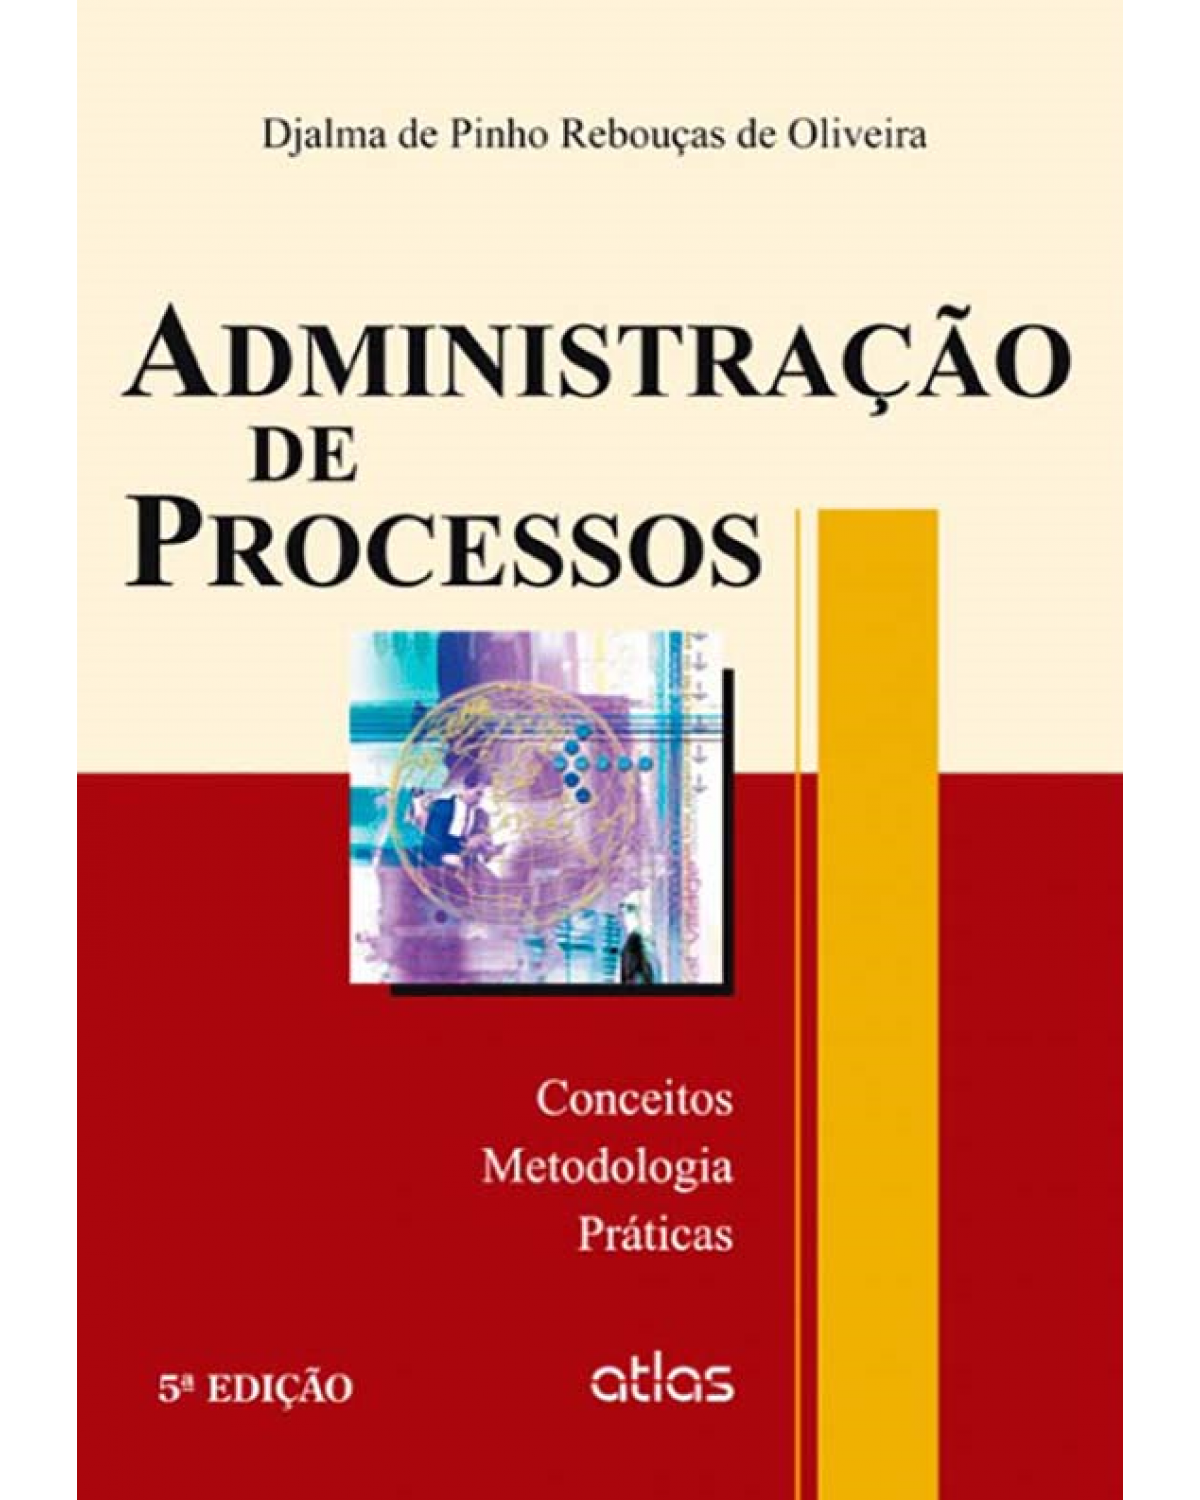 Administração de processos - Conceitos, metodologia, práticas - 5ª Edição | 2013